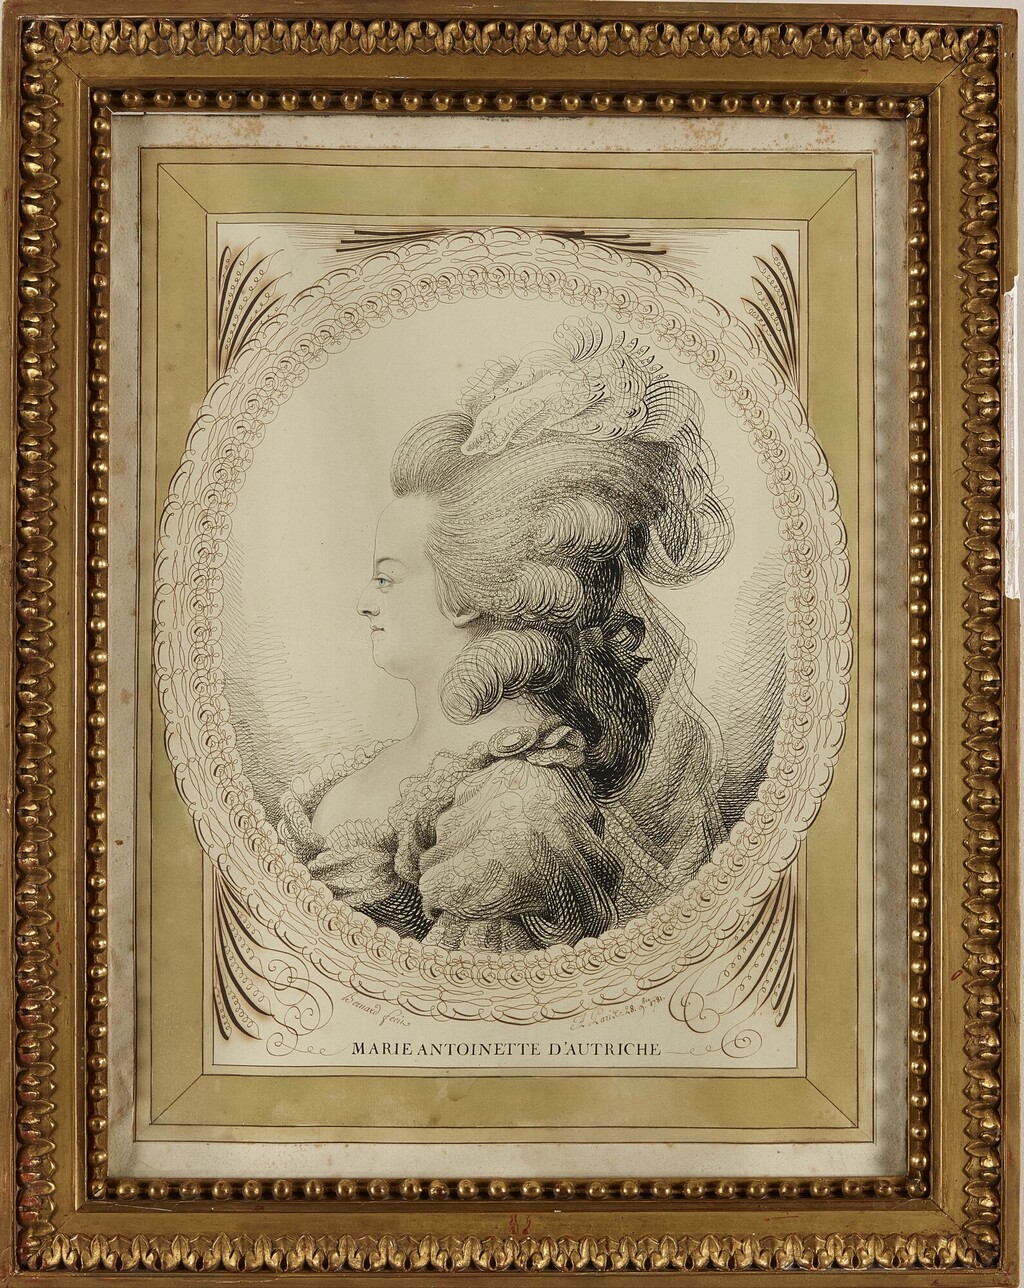 bernard - Les Bernard : portraits calligraphiques, dit au trait de plume, de Marie-Antoinette et Louis XVI Image217